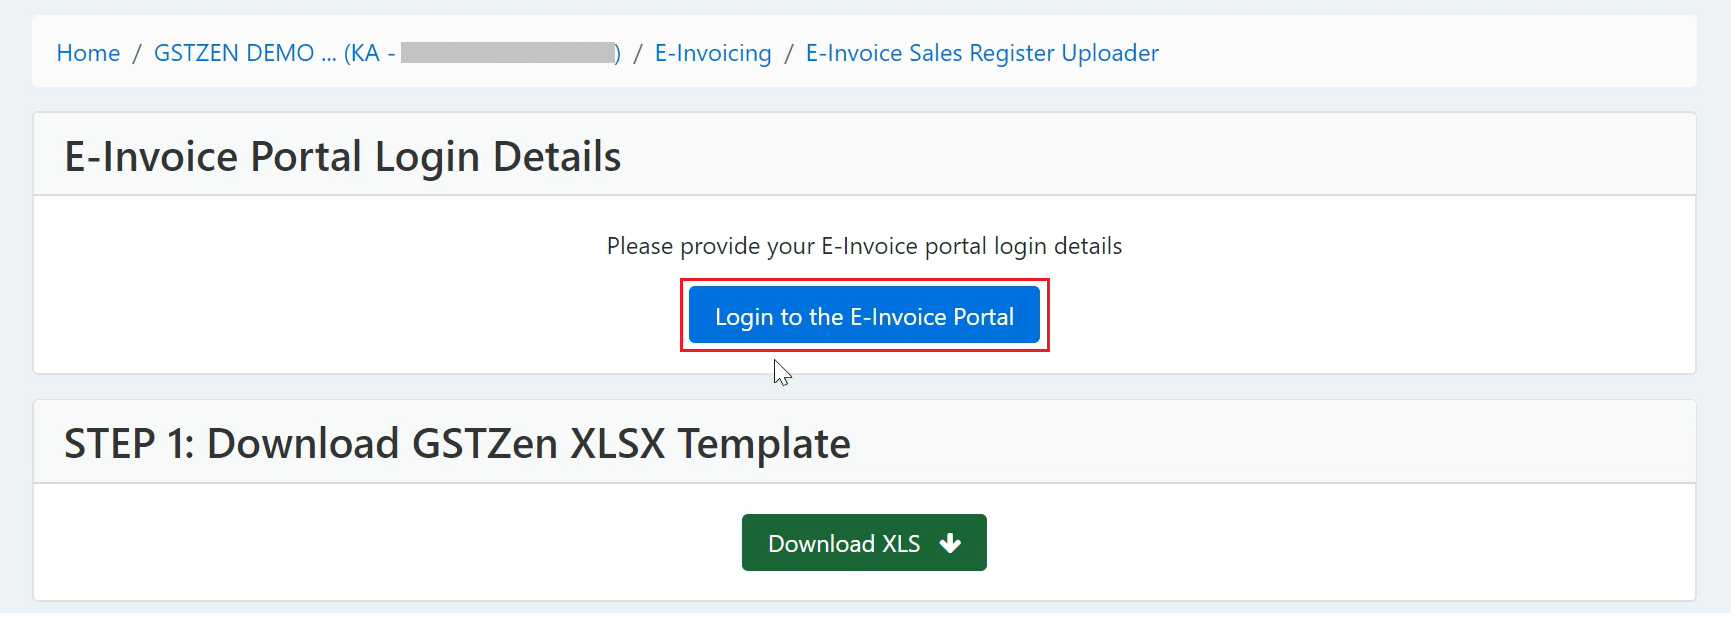 Login to E-Invoice Portal